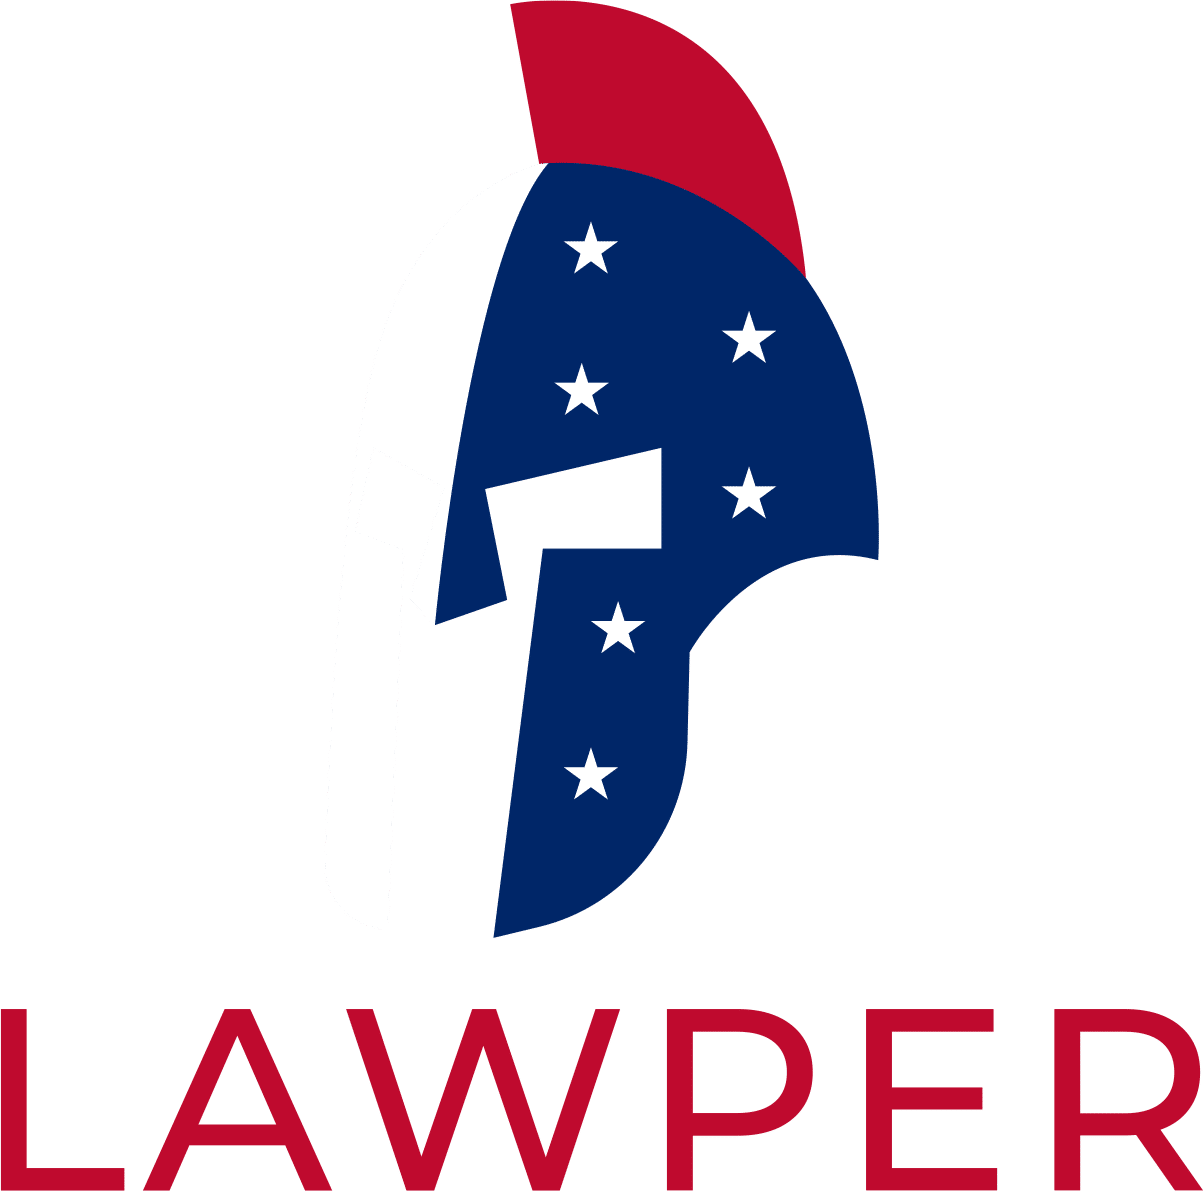 Law-per